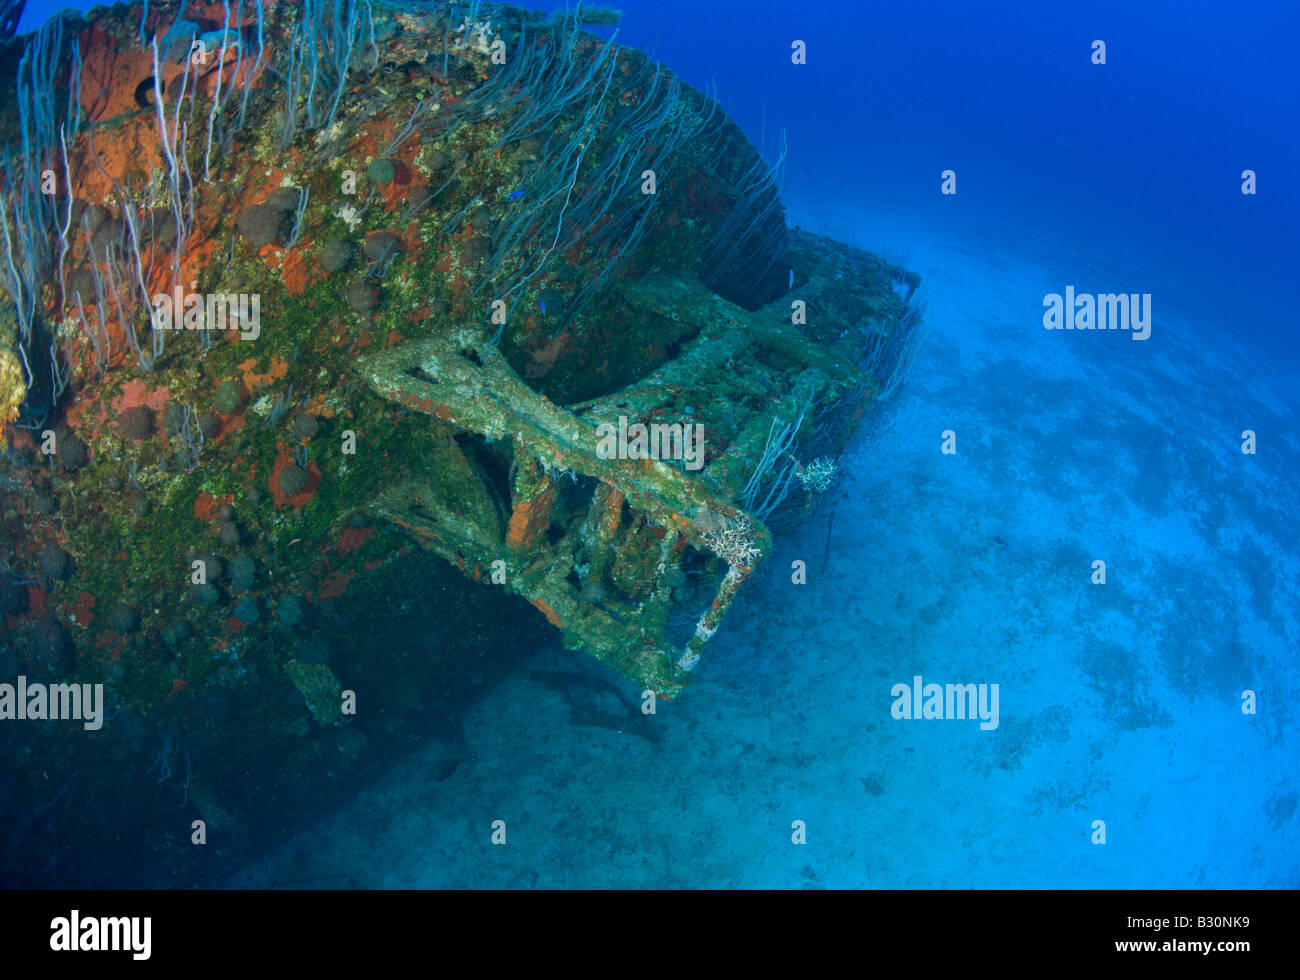 Depth Charge Piste à destroyer USS Anderson atoll de Bikini des Îles Marshall Micronésie Océan Pacifique Banque D'Images